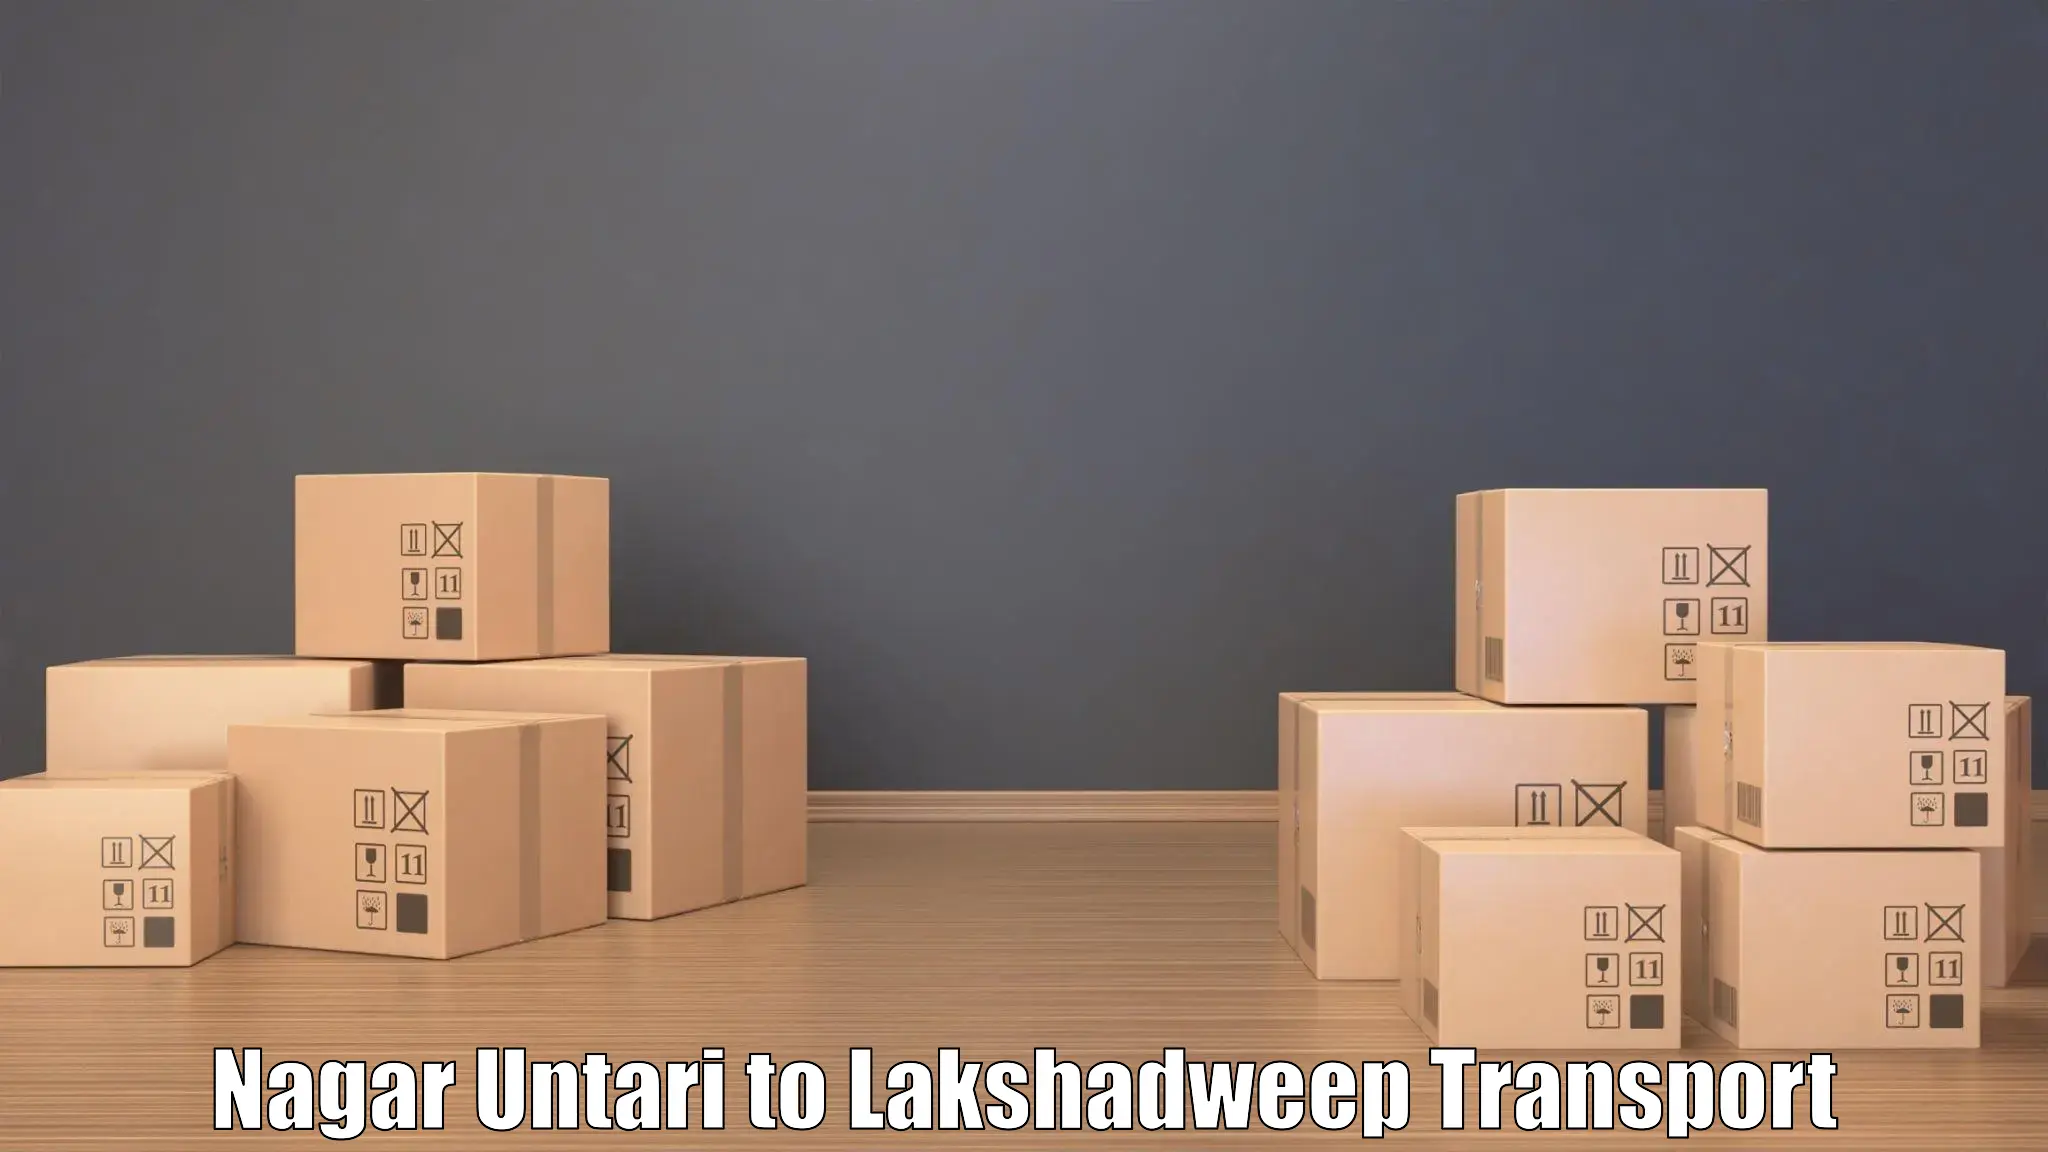 Two wheeler parcel service Nagar Untari to Lakshadweep